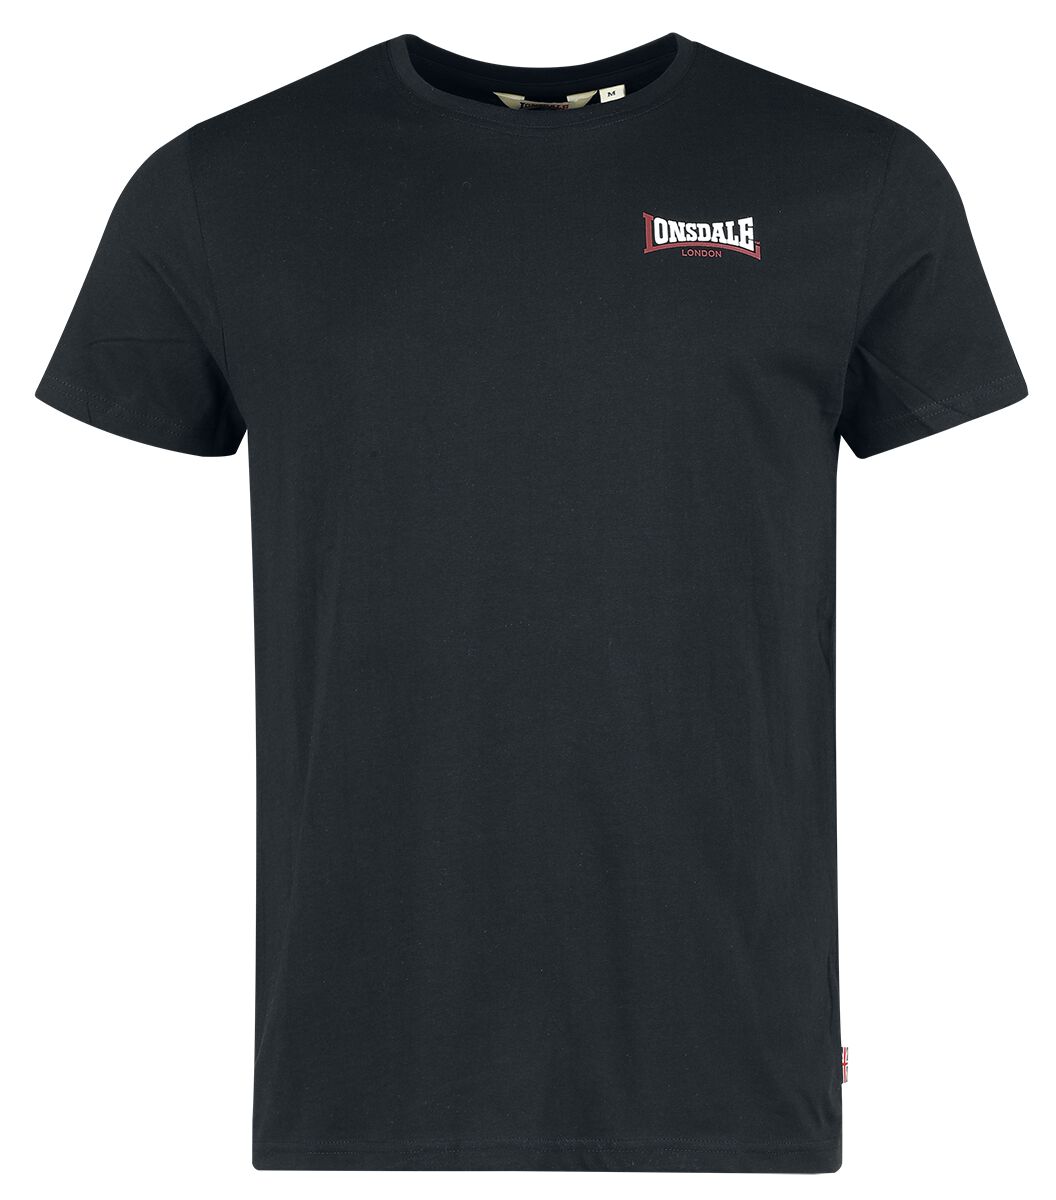 Lonsdale London T-Shirt - DALE - S bis XXL - für Männer - Größe XL - schwarz